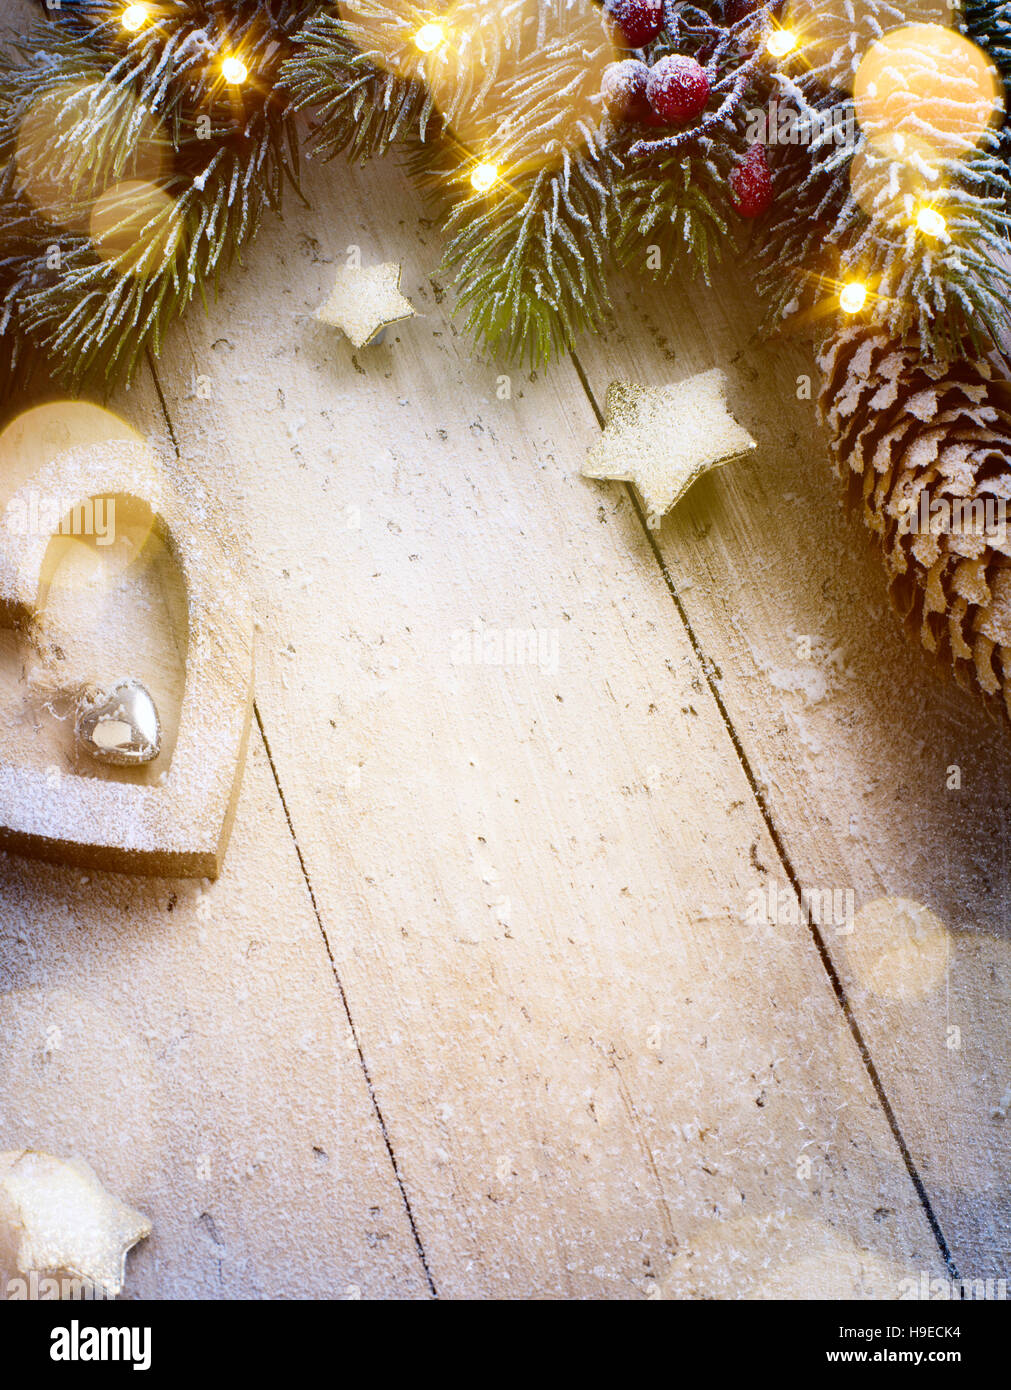 Composition de Noël ; décoration de Noël, branches de sapins, des vacances de lumière sur fond de bois ; vue de dessus avec l'exemplaire de l'espace pour votre texte Banque D'Images